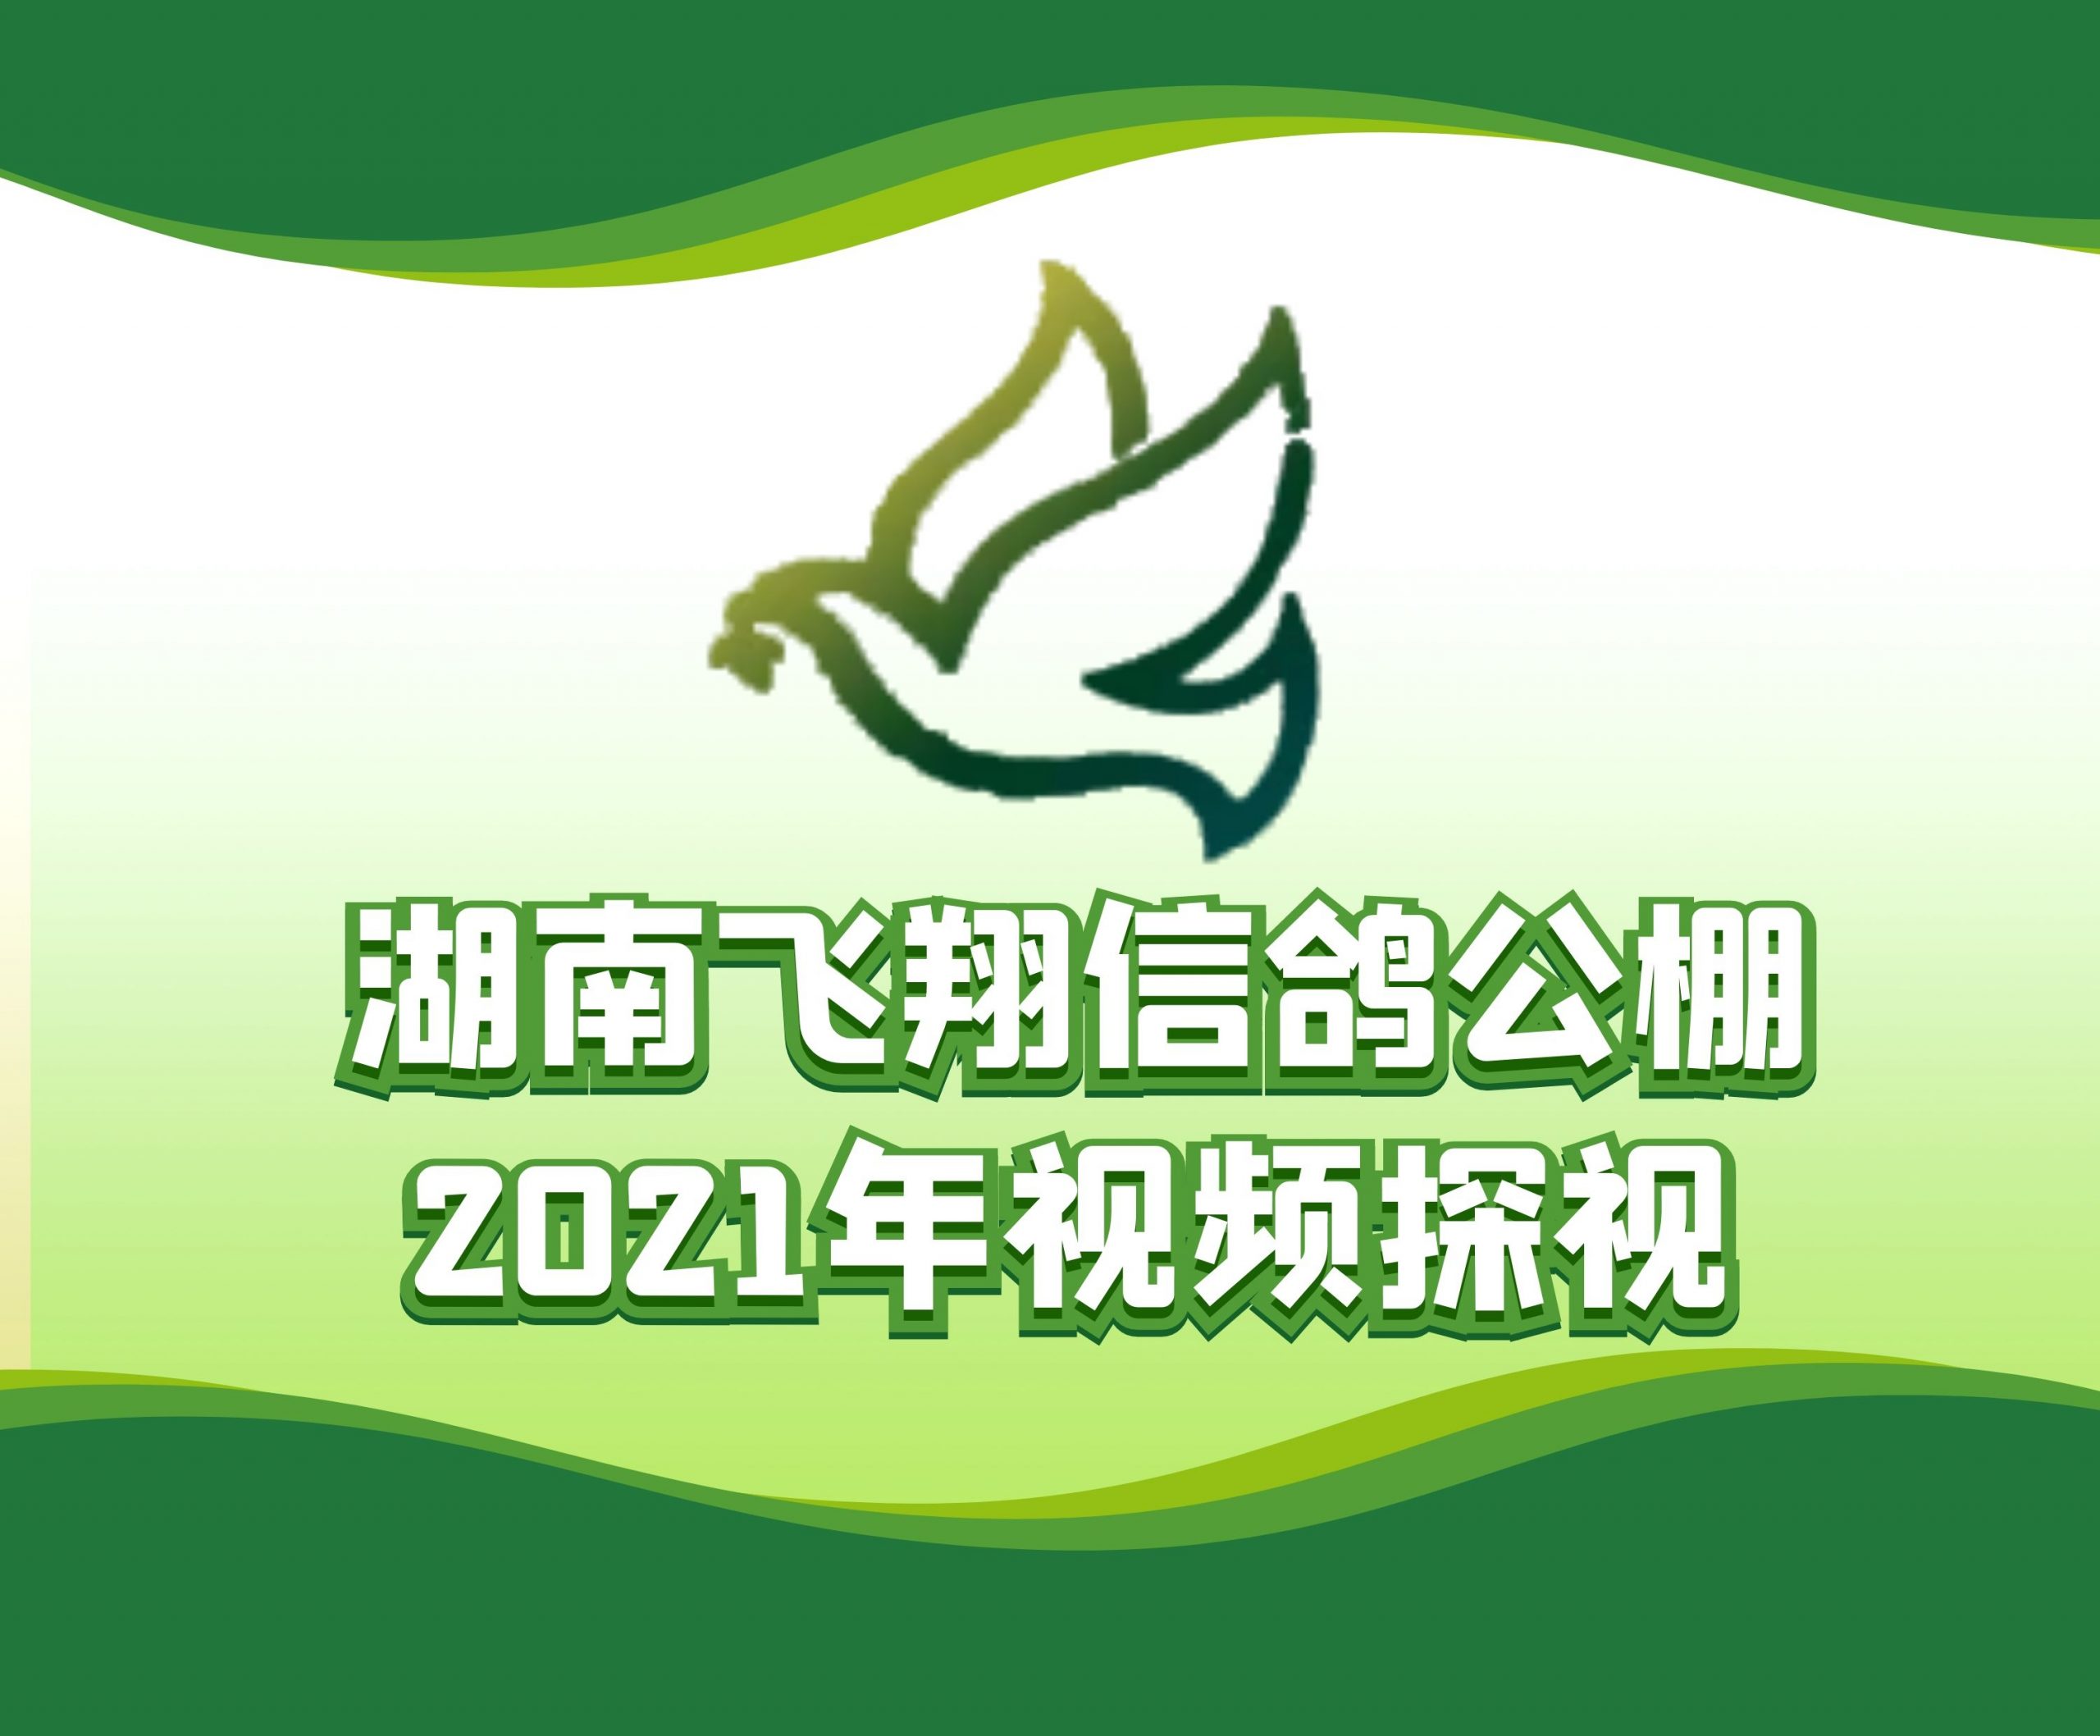 盛辉特-吴石鸽-2021-14-0126141